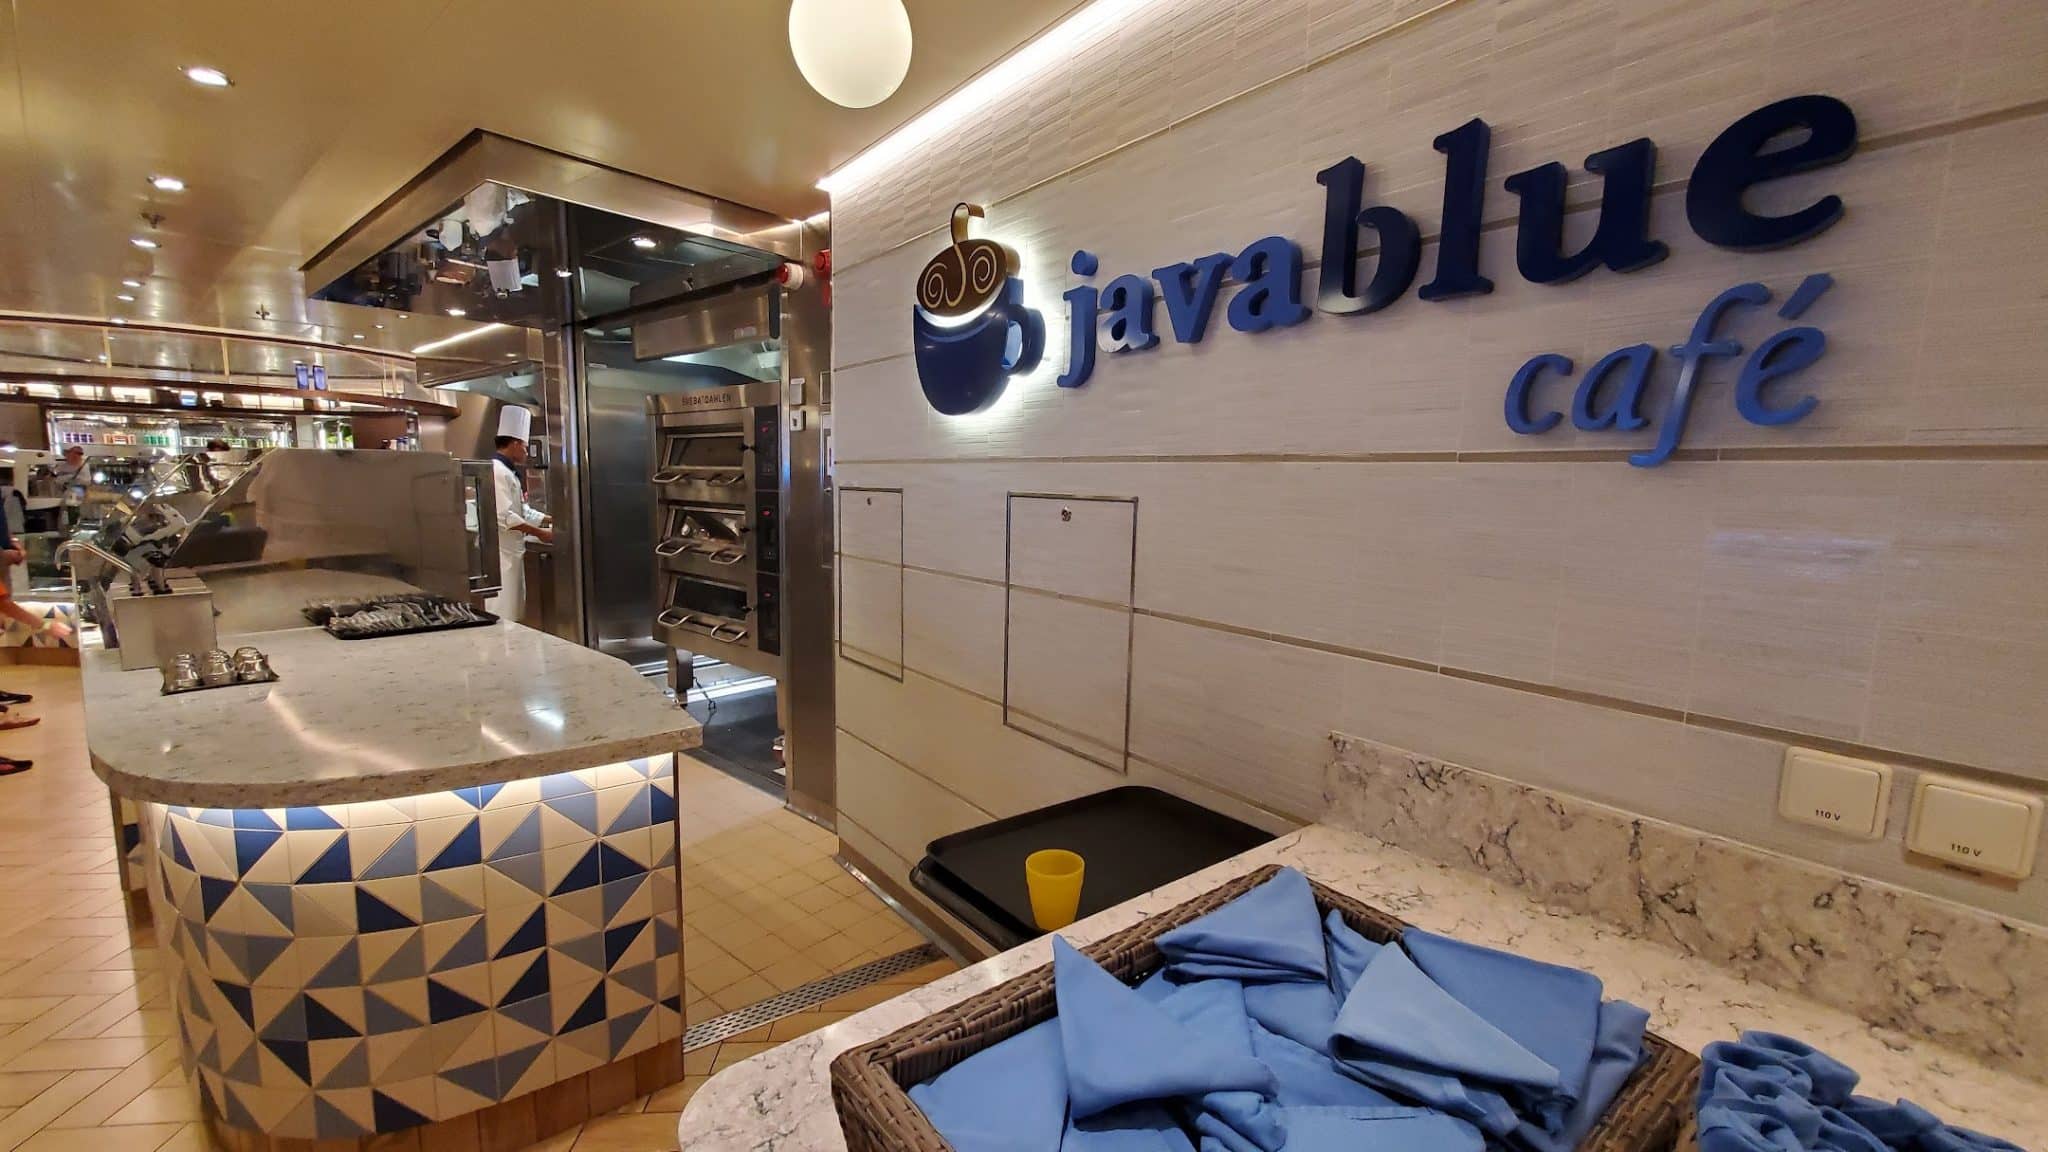 Java Blue Cafe on Carnival Celebration